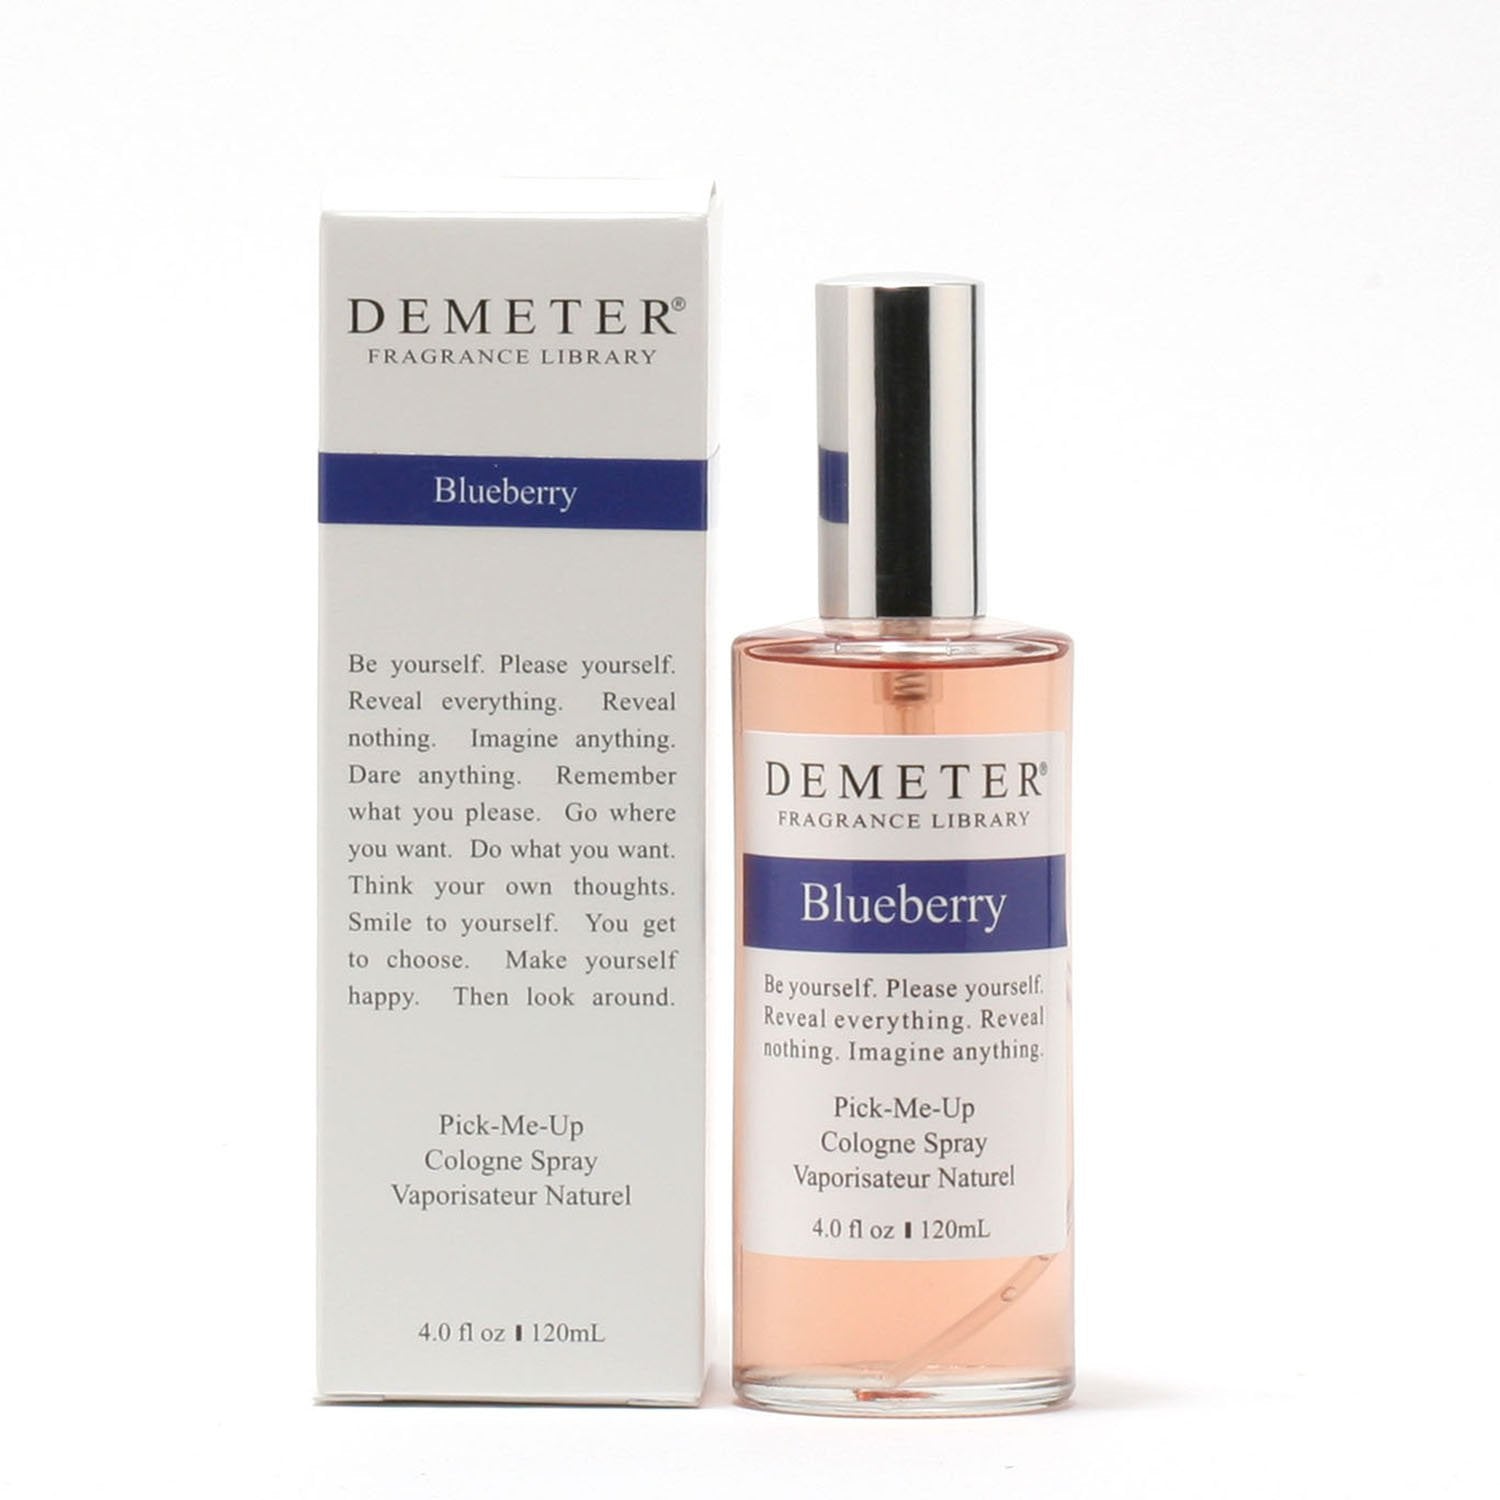 Perfume - DEMETER BLUEBERRY FOR WOMEN - COLOGNE SPRAY, 4.0 OZ